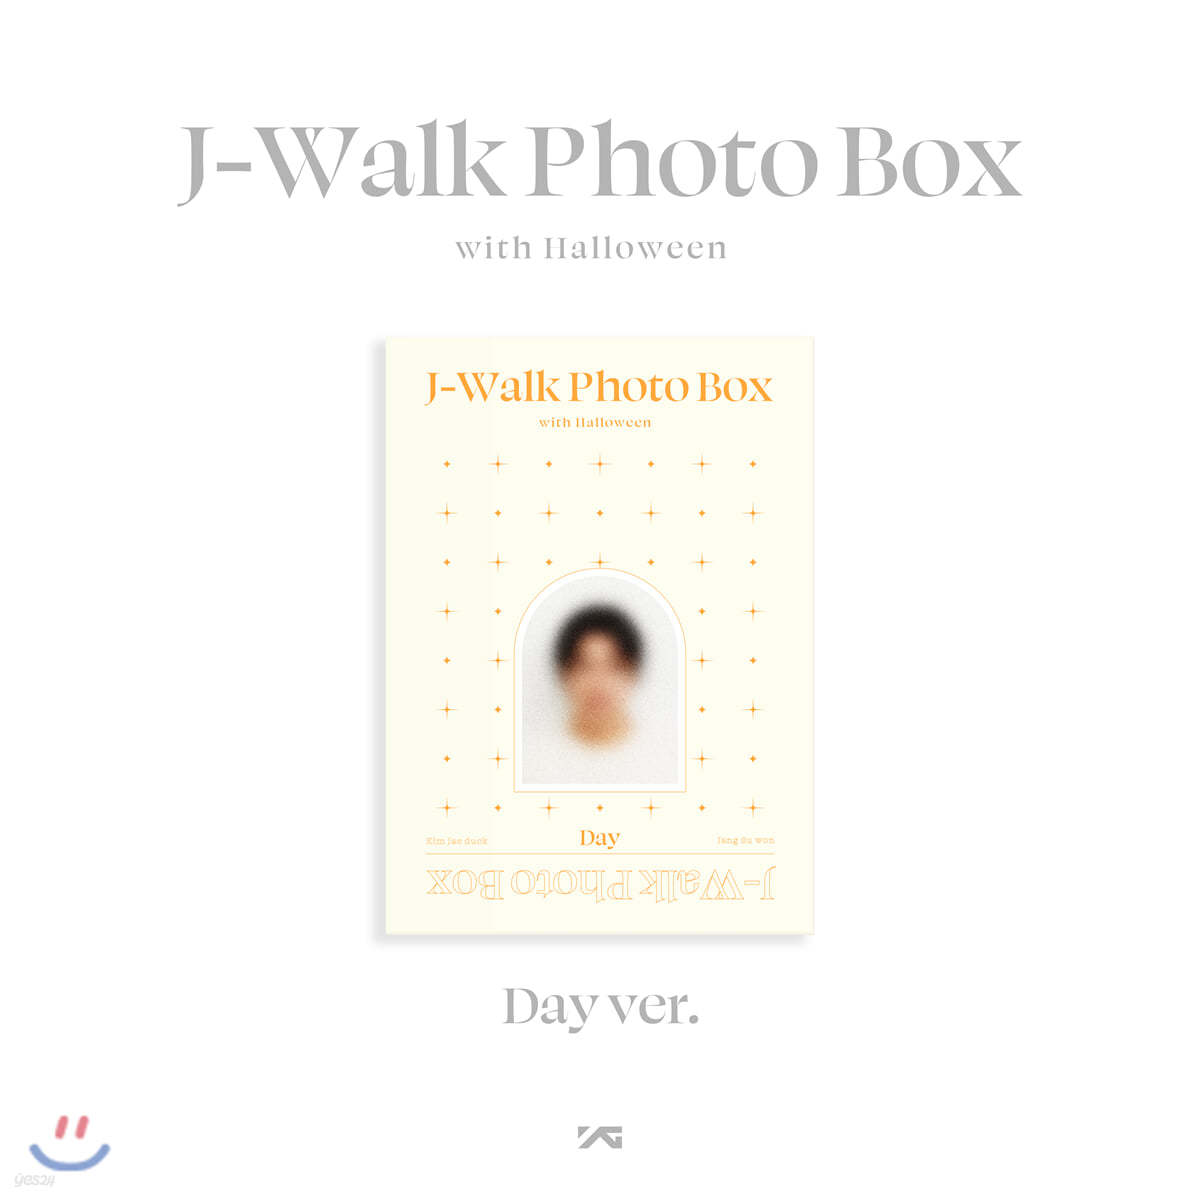 제이워크 (J-WALK) - J-Walk Photo Box with Halloween [DAY ver.]